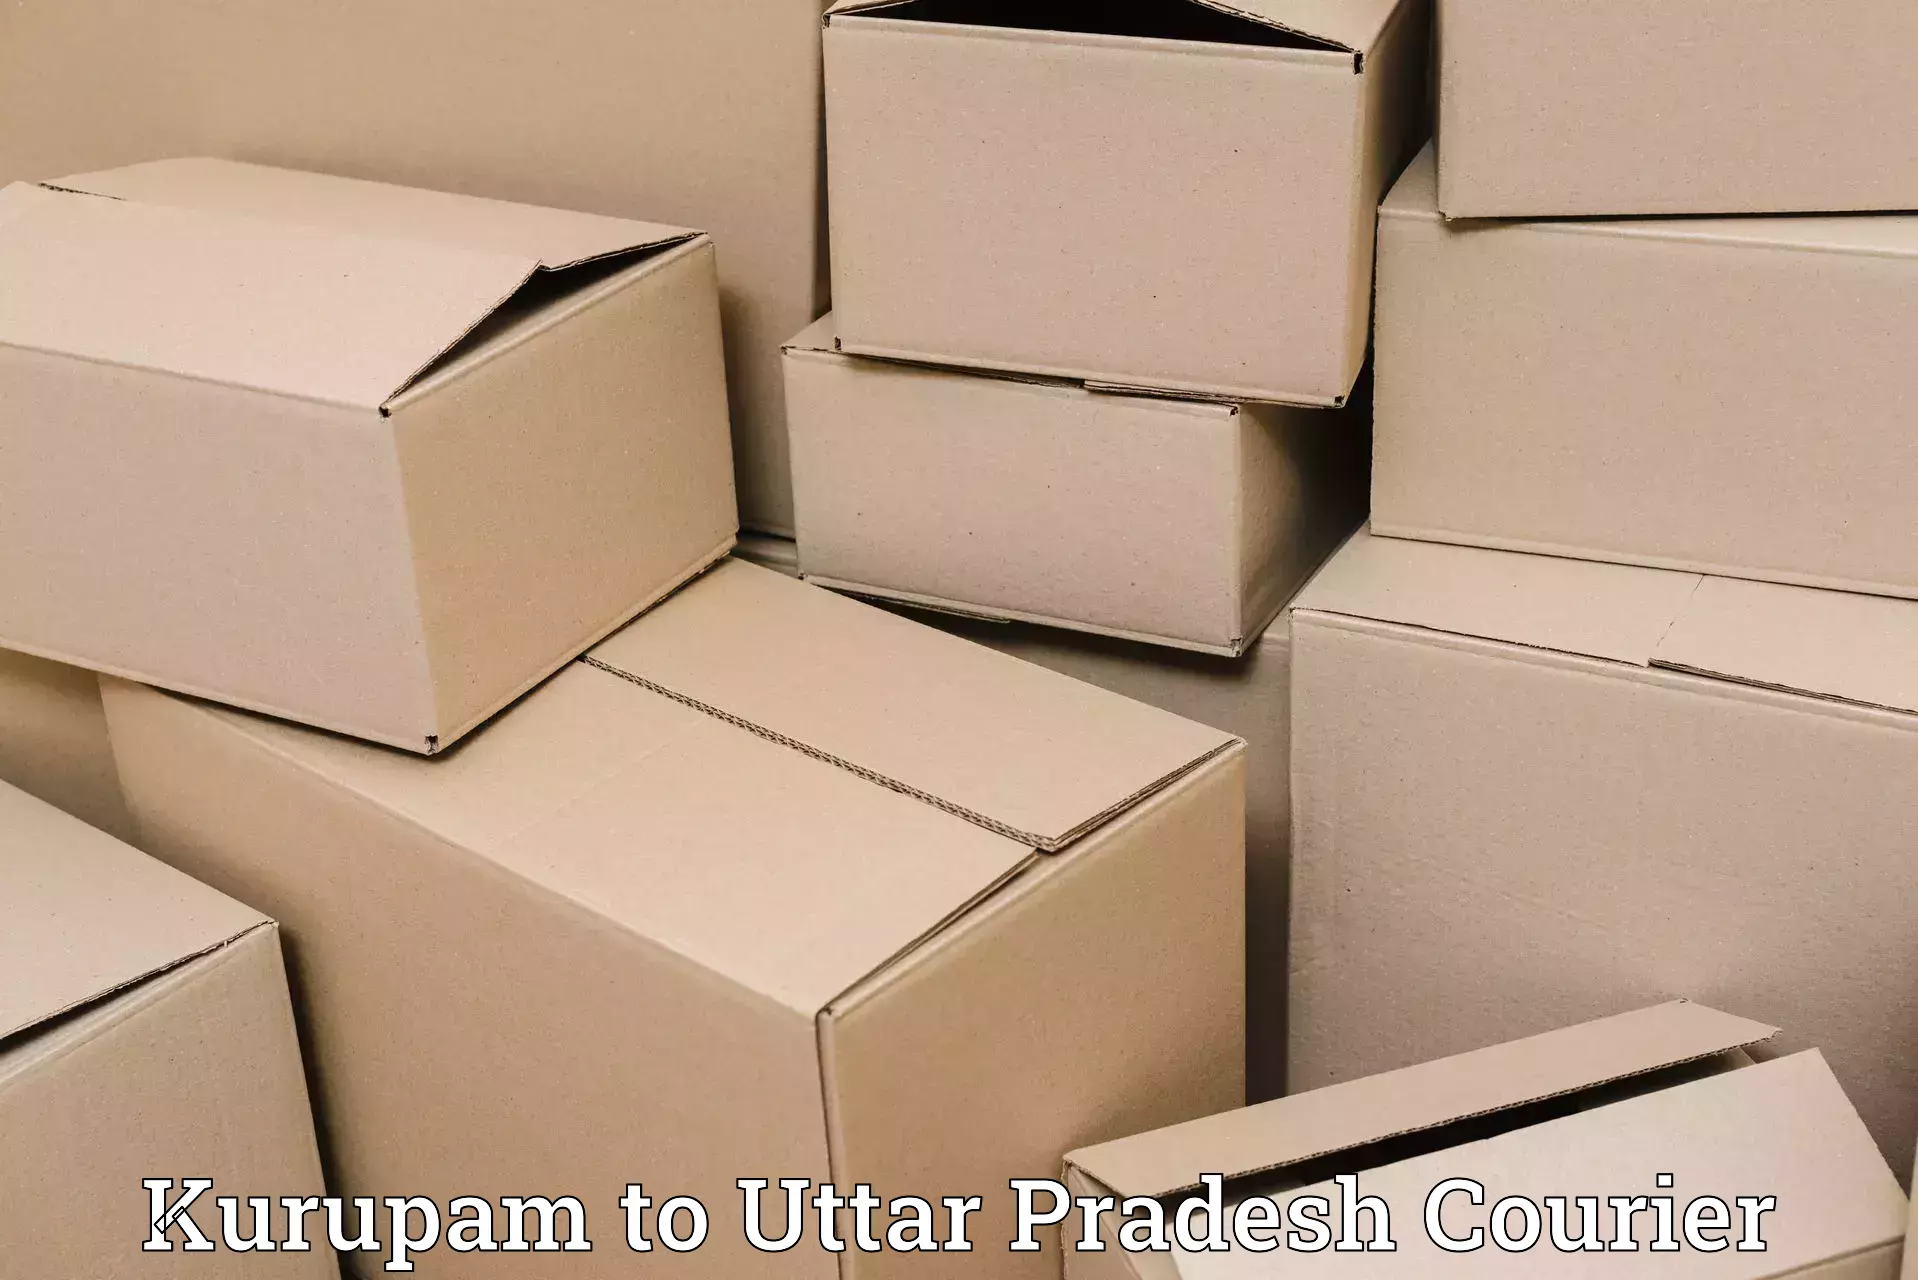 Express mail service Kurupam to Aliganj